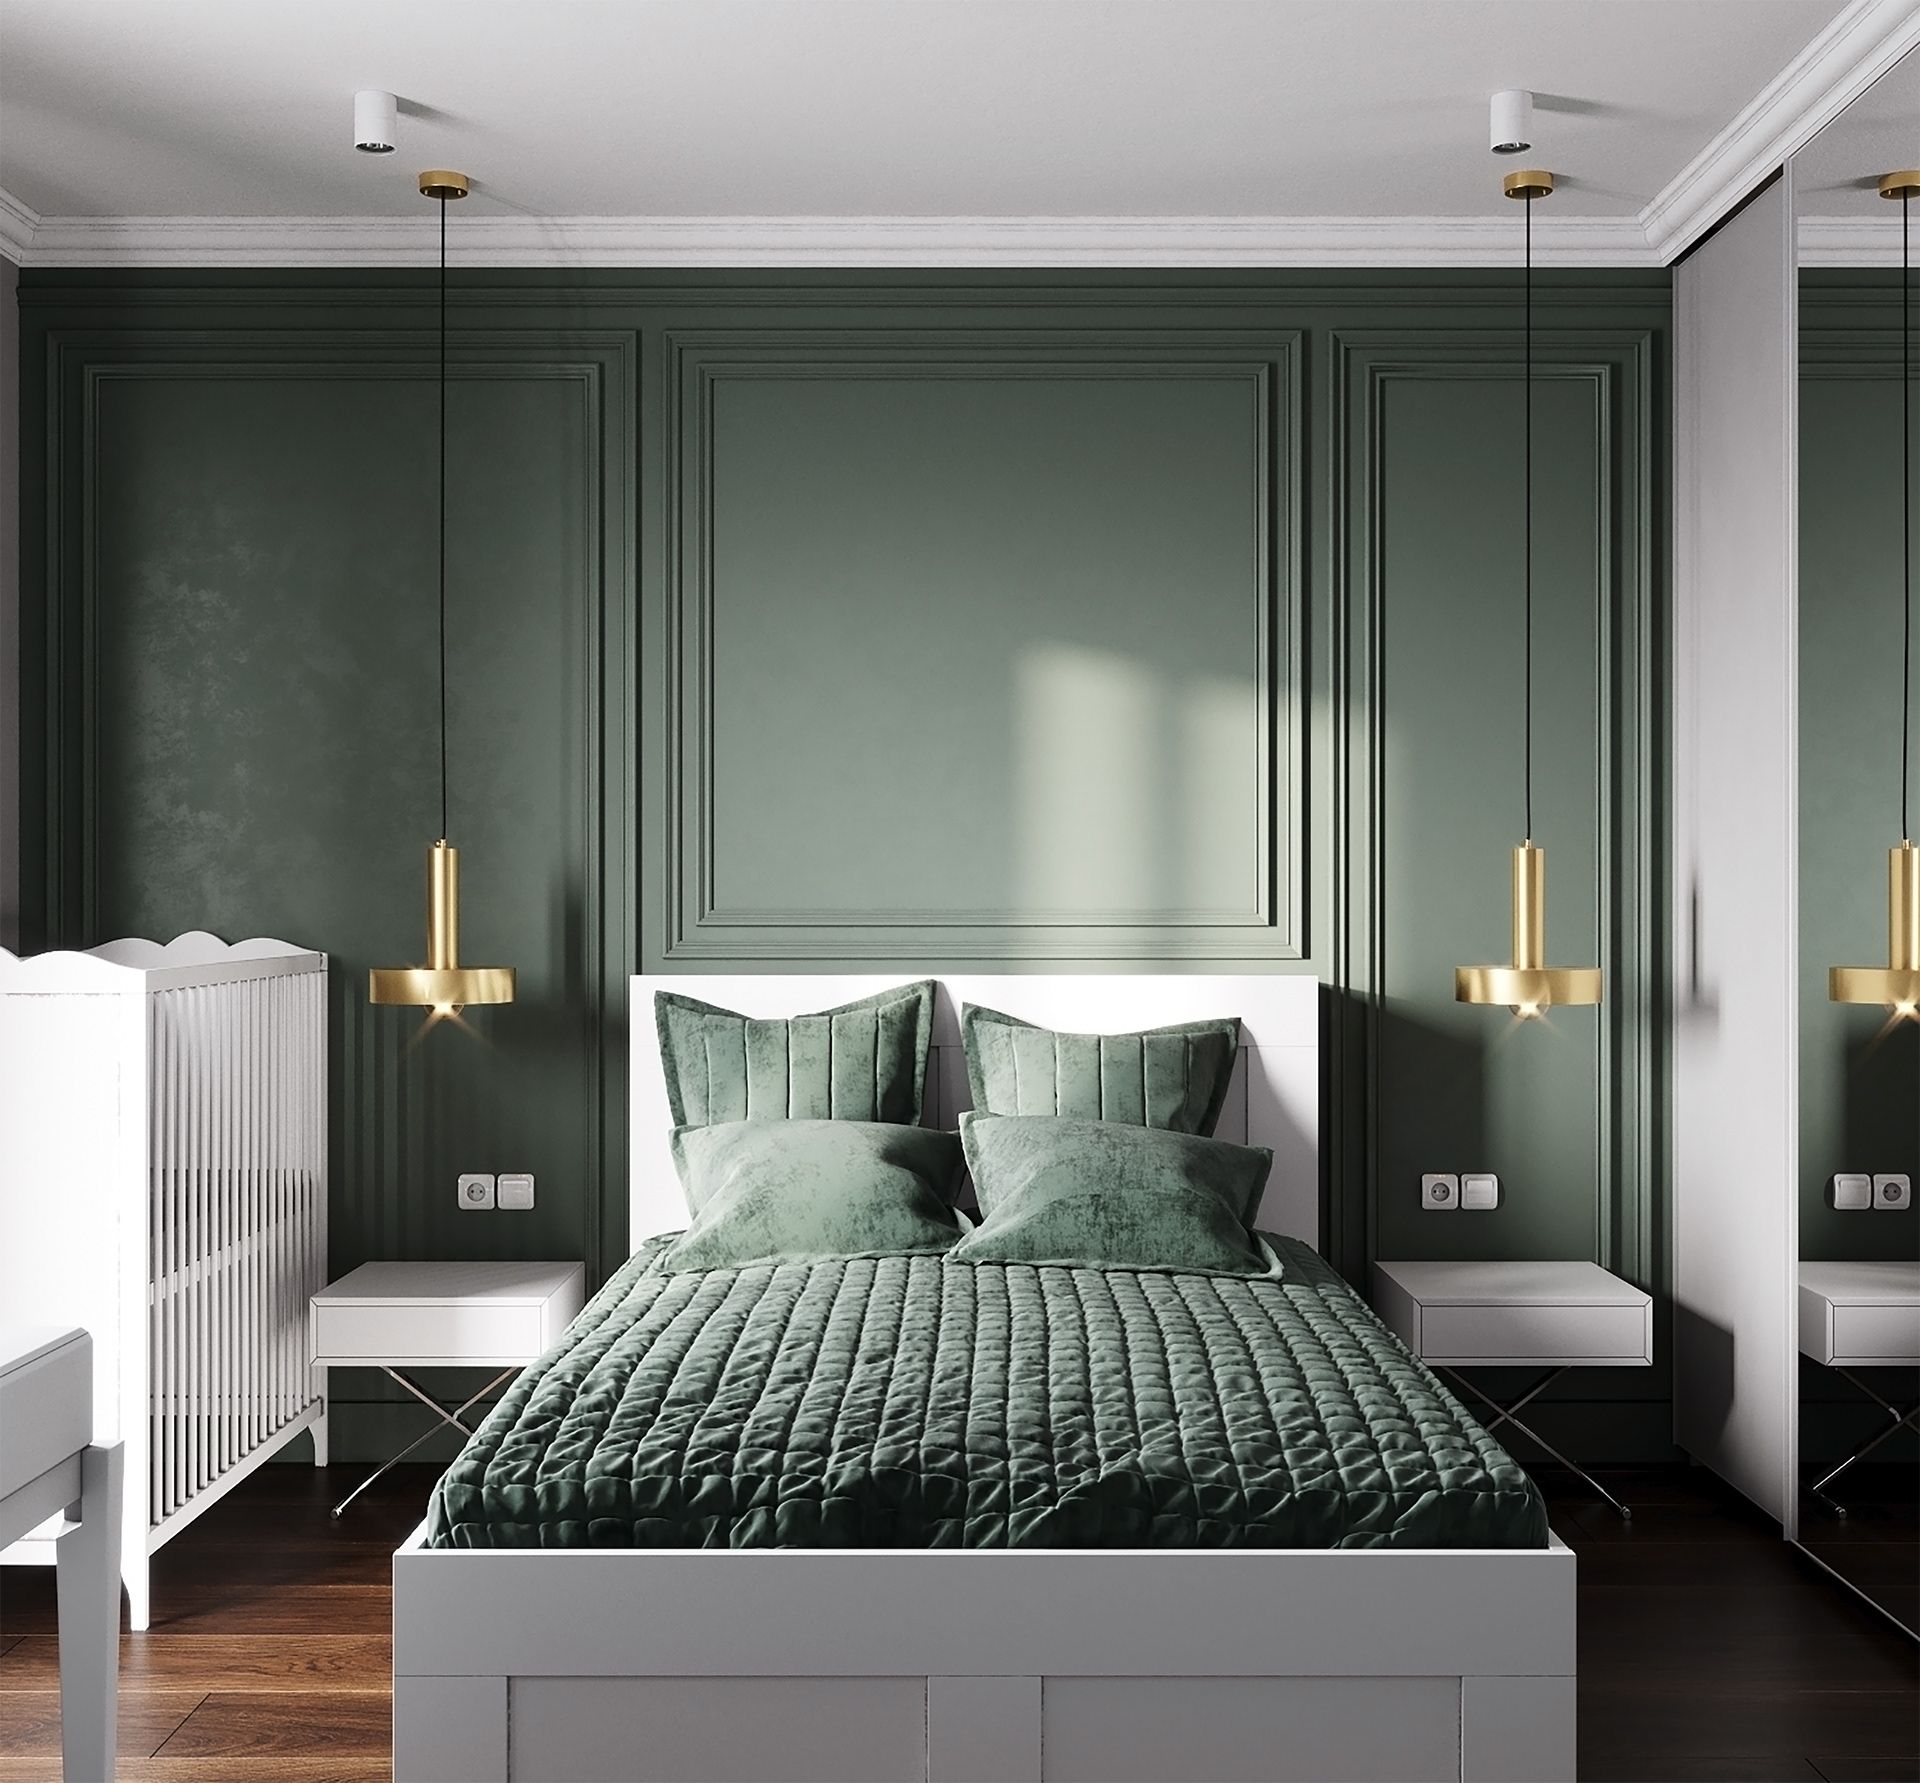 Mẫu phòng ngủ màu xanh lá cây phong cách hiện đại phối thêm màu trắng